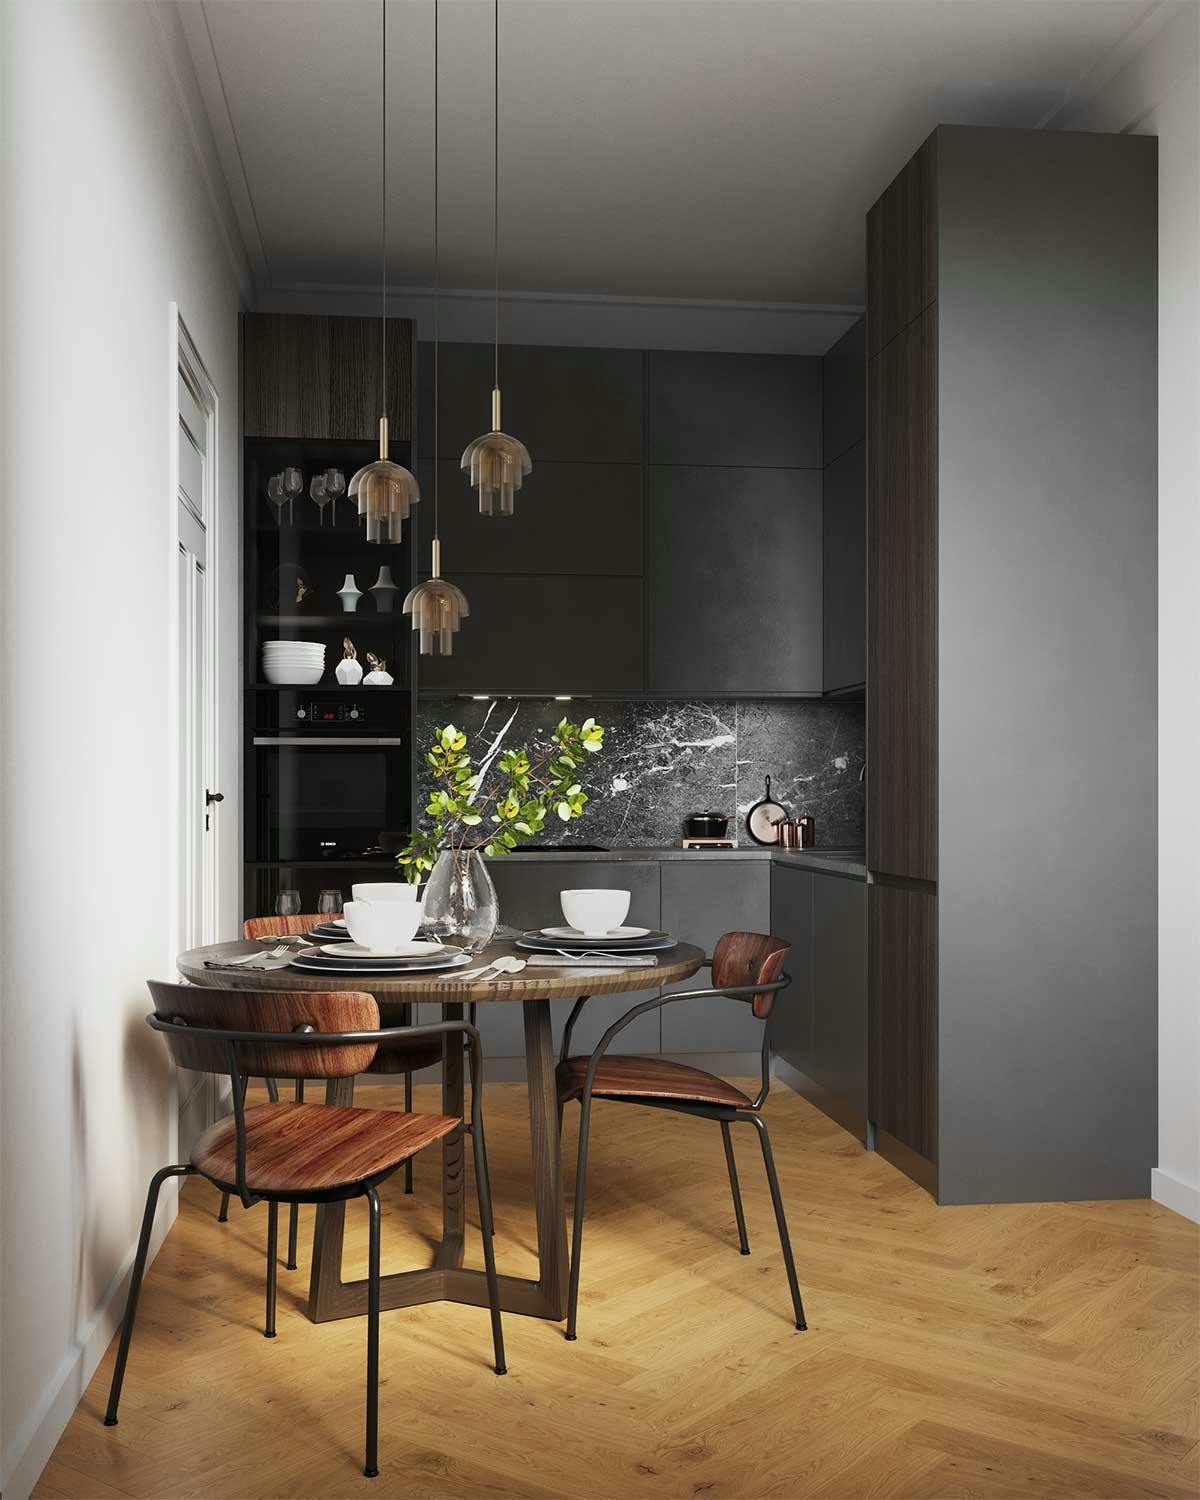 3D-Visualisierung des Interieurs und des Produkts mit dem Einrichtungskonzept einer anthrazitfarbenen Küche in einem Altbau in Köln, Deutschland.